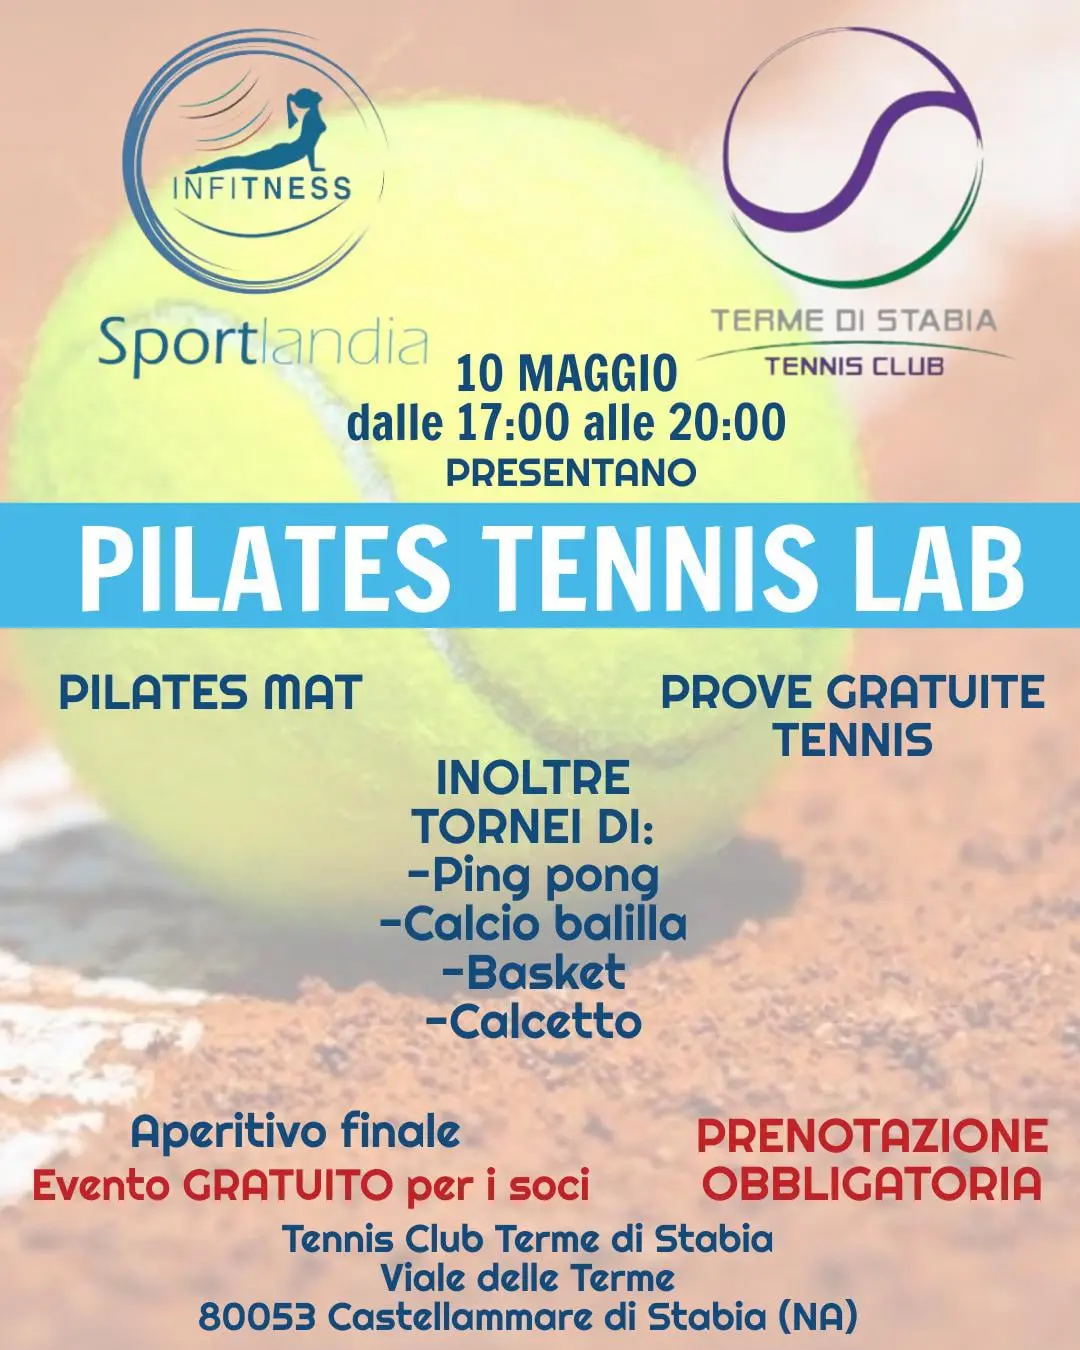 Pilates Tennis Lab - Infitness Sportlandia